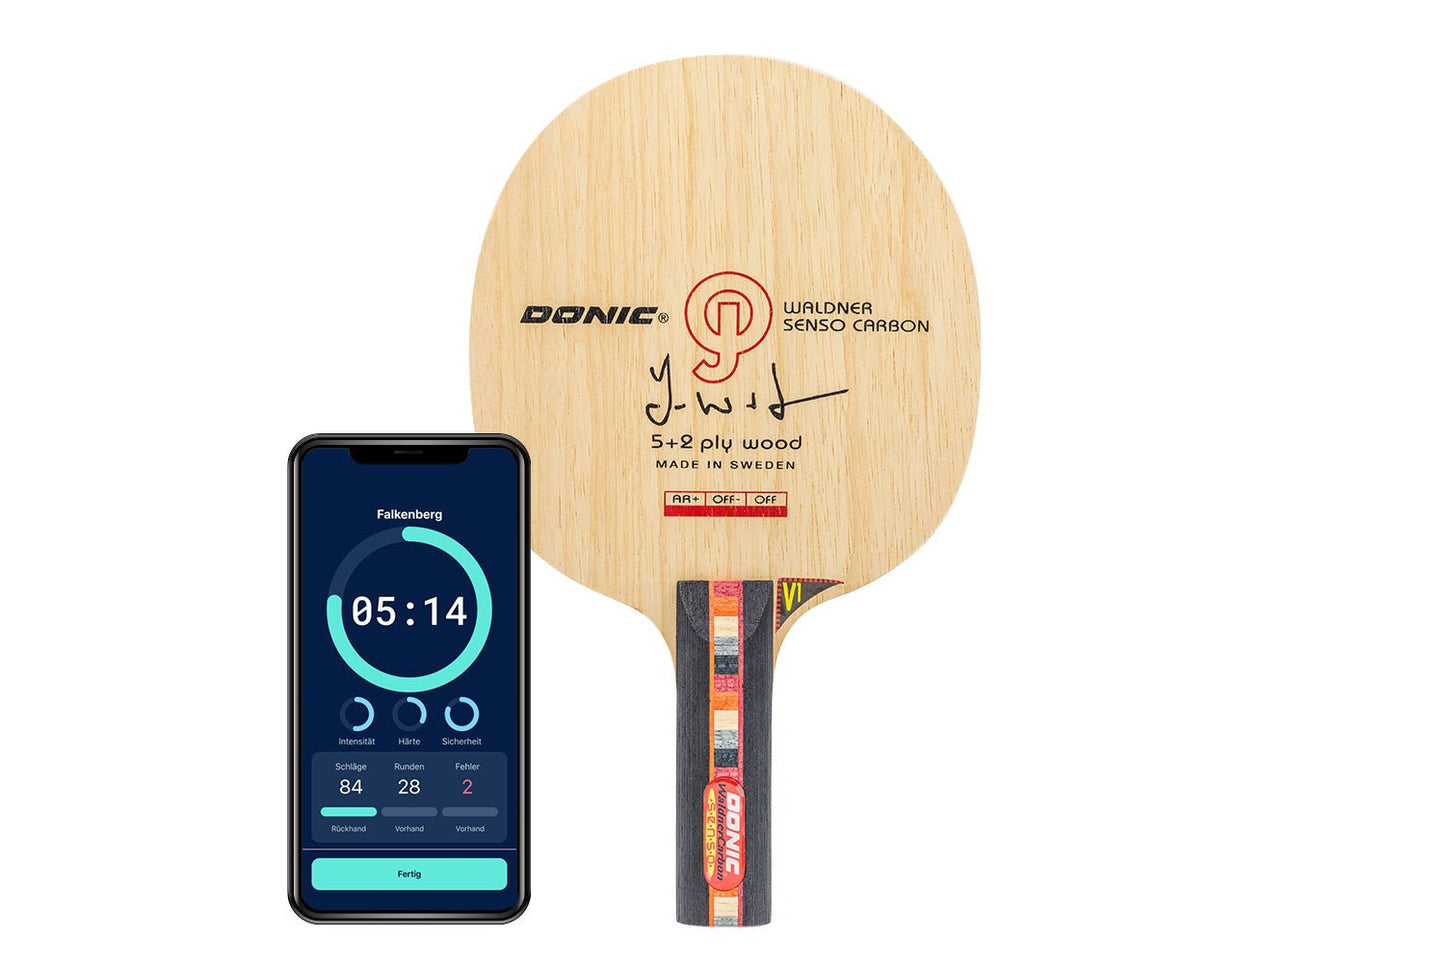 DONIC Waldner Senso Carbon Tischtennisschläger mit geradem Griff und Smartphone zeigt Daten des Schlägers vor weißem Hintergrund